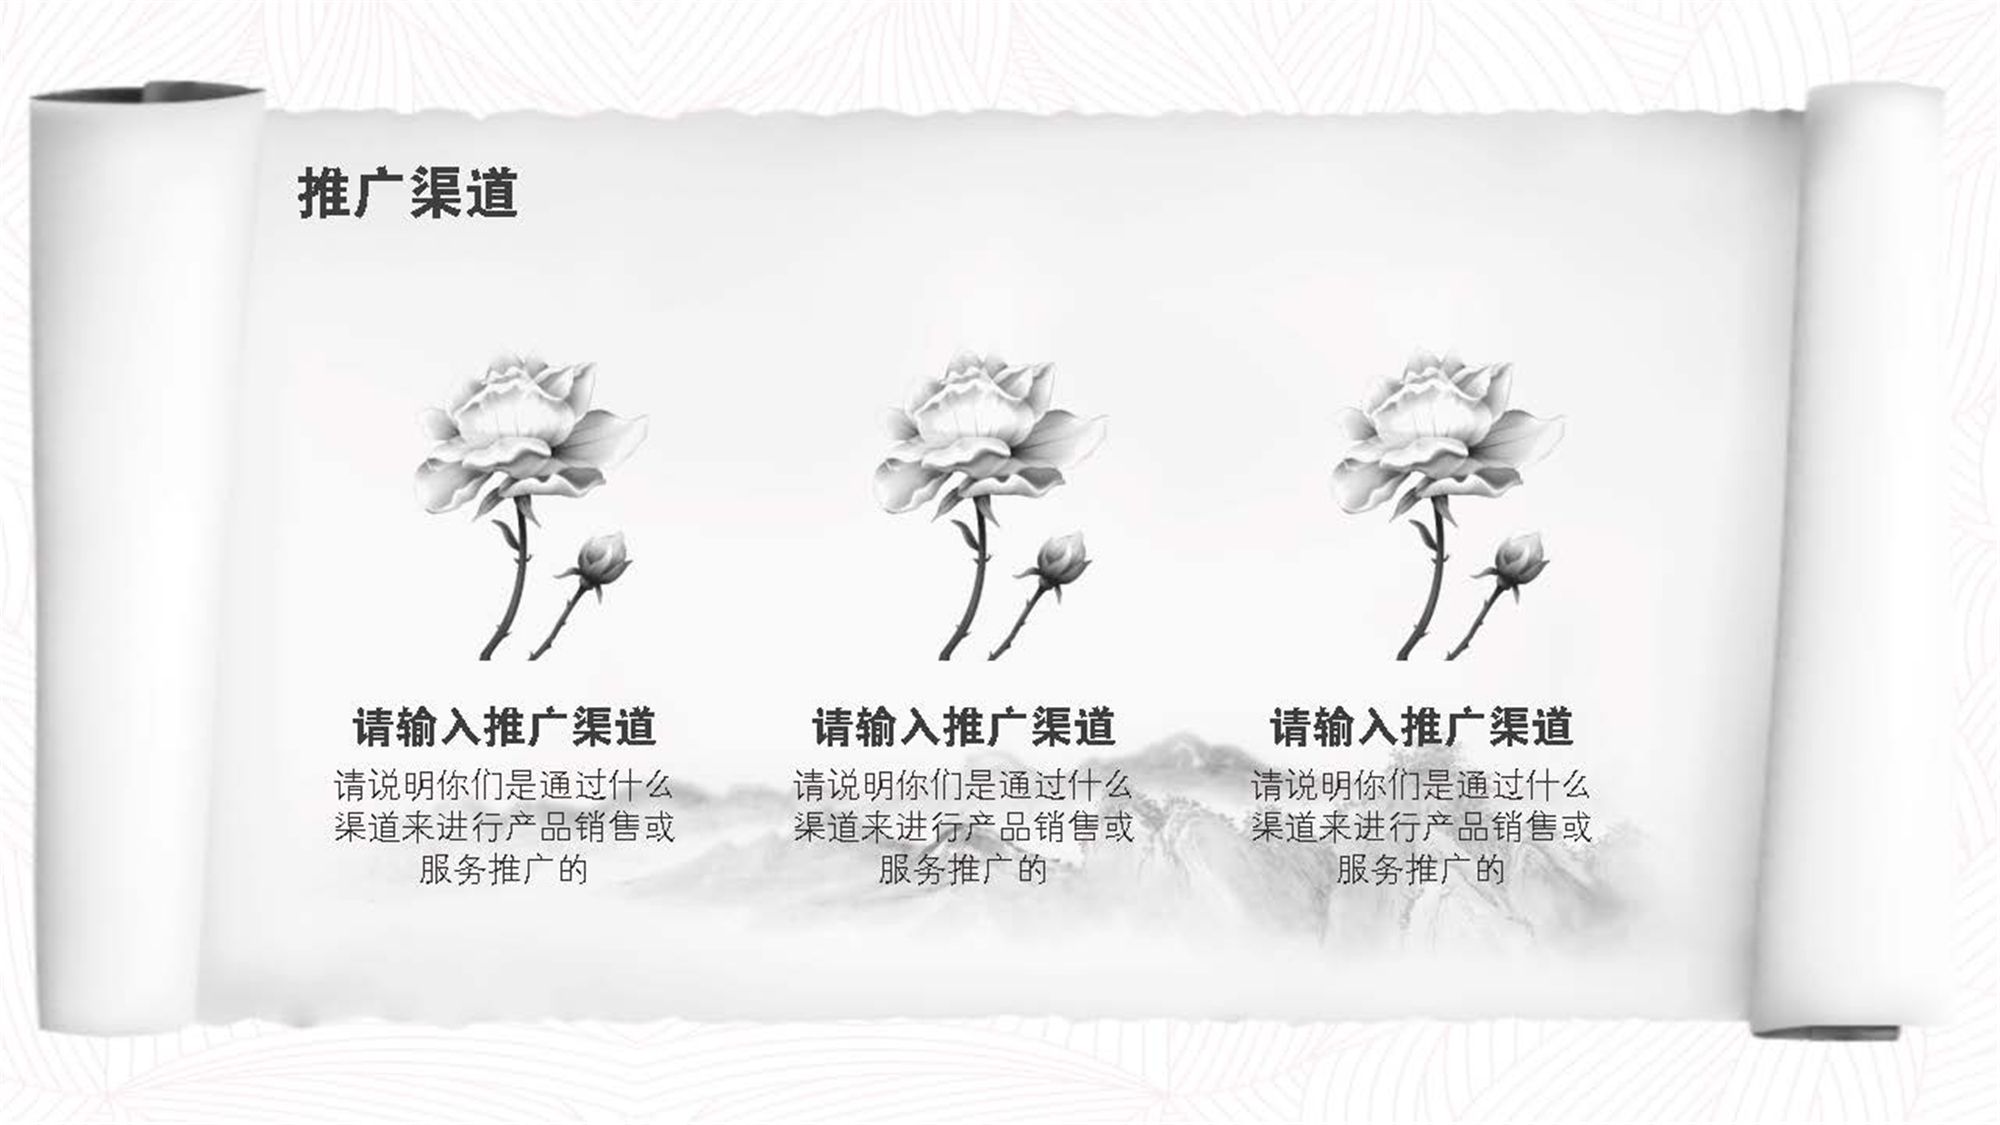 黑白水墨中国风山水画特色商业计划书模版